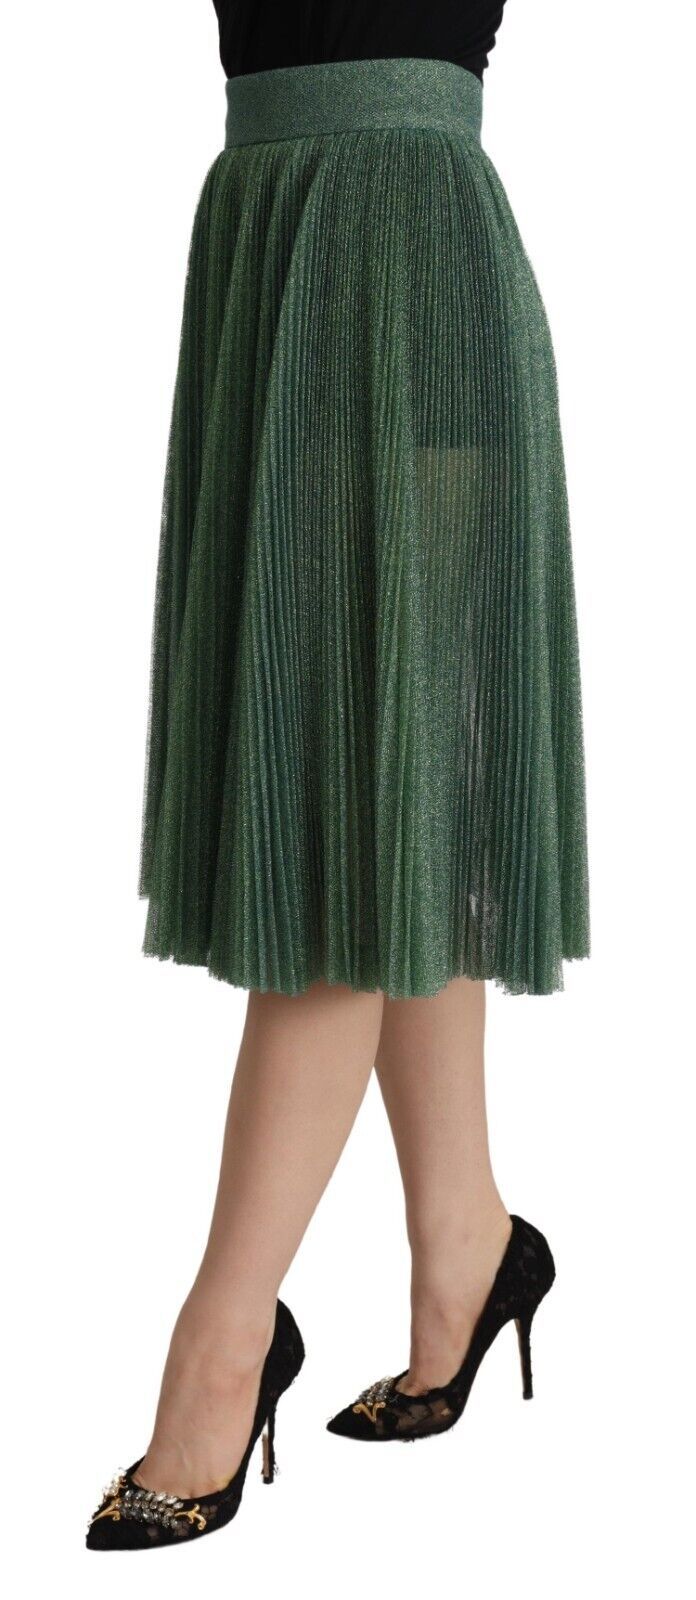 Dolce & Gabbana Metallic Green High Waist A-line Pleated Skirt